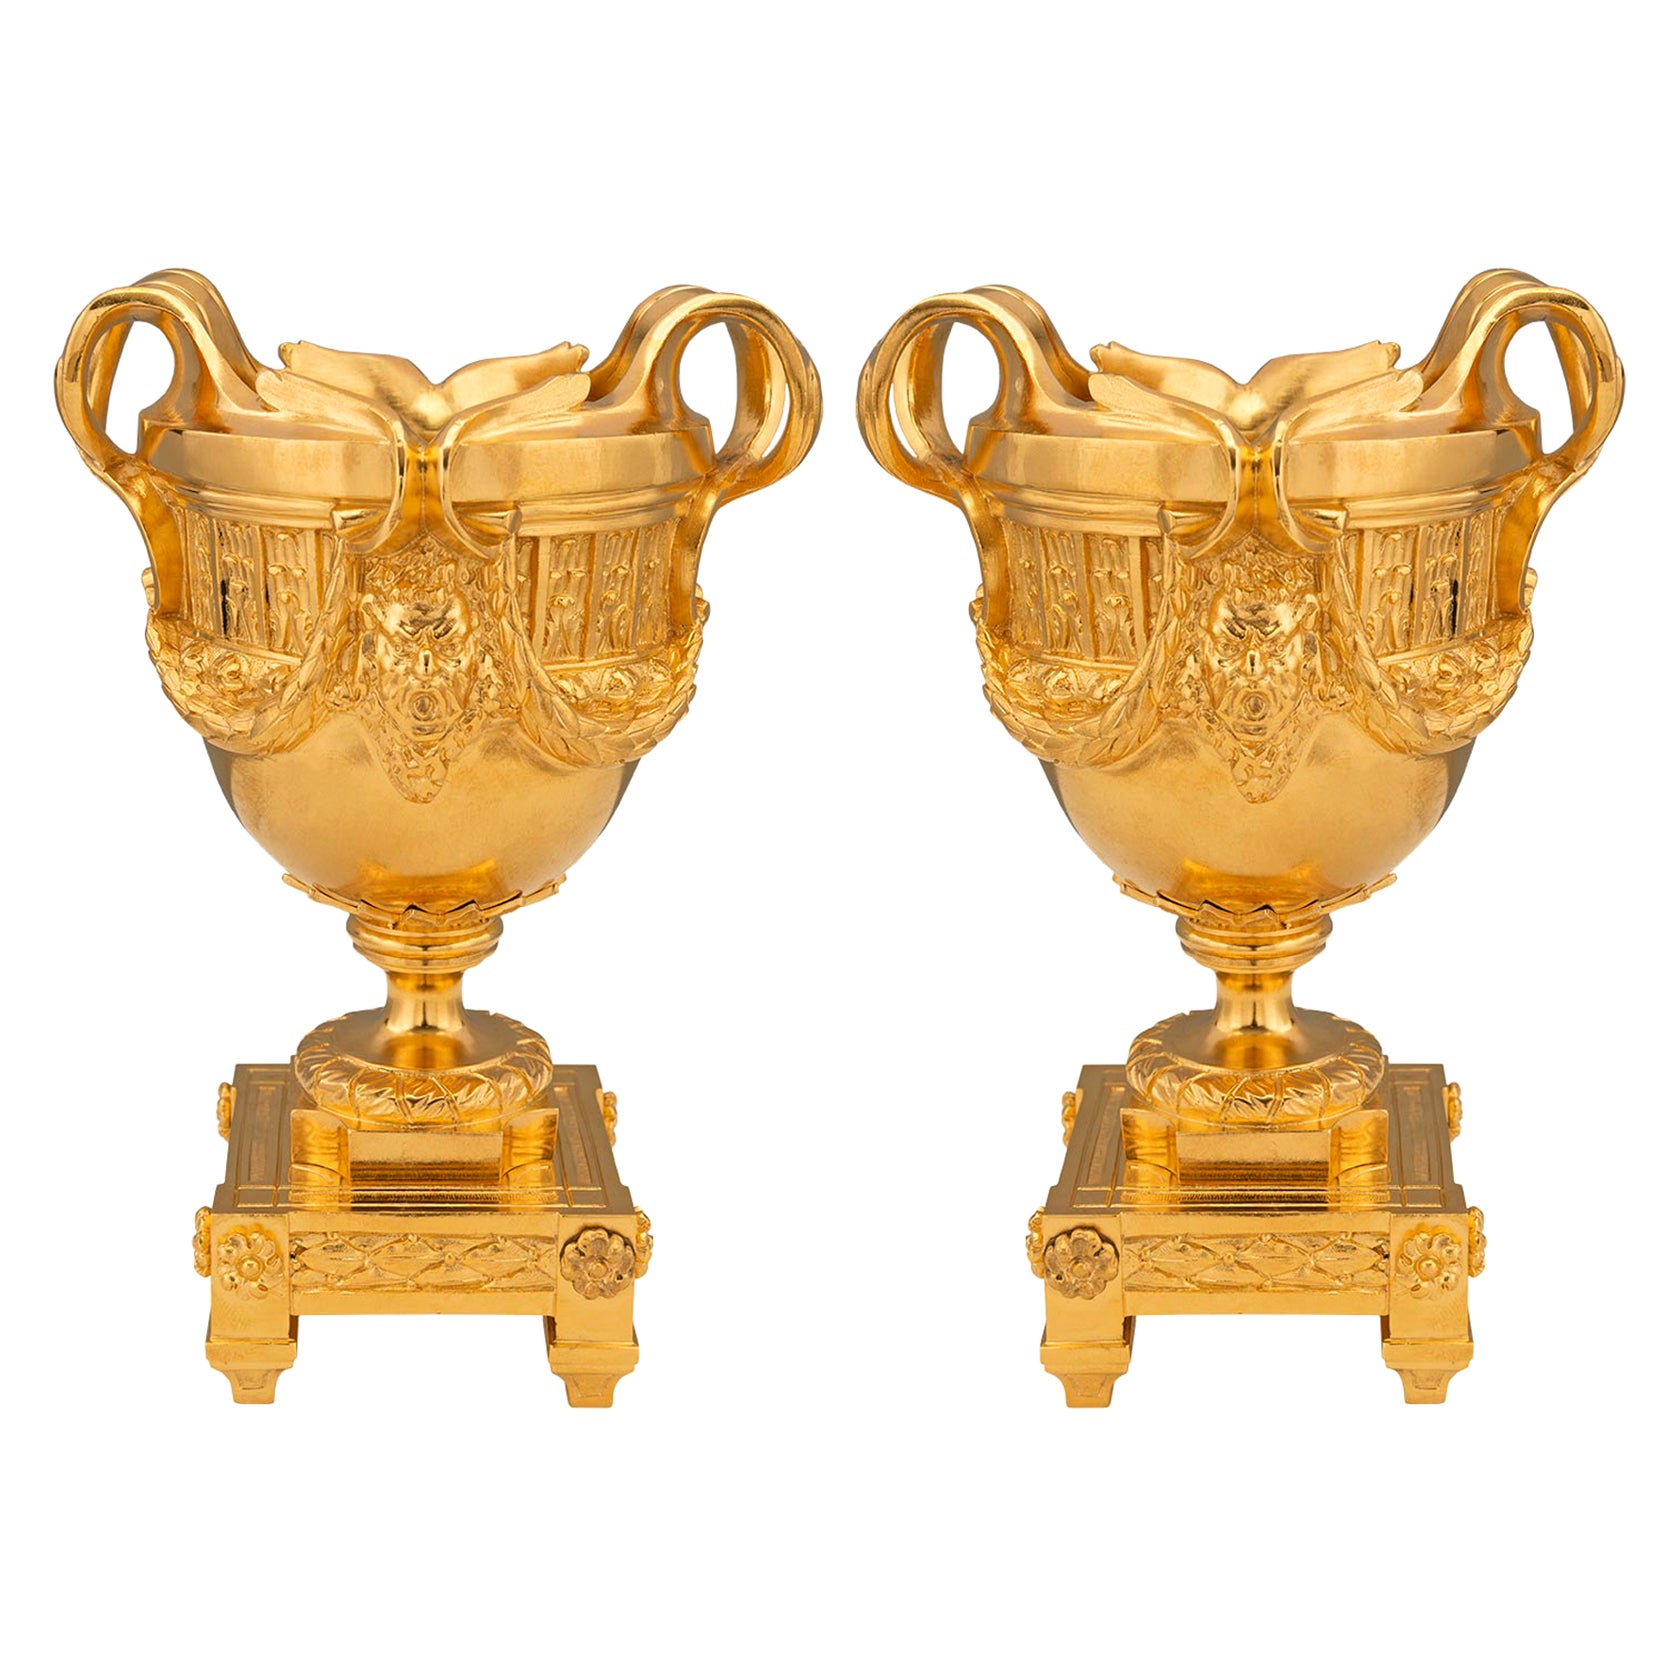 Paire de vases en bronze doré de style Louis XVI du 19ème siècle français